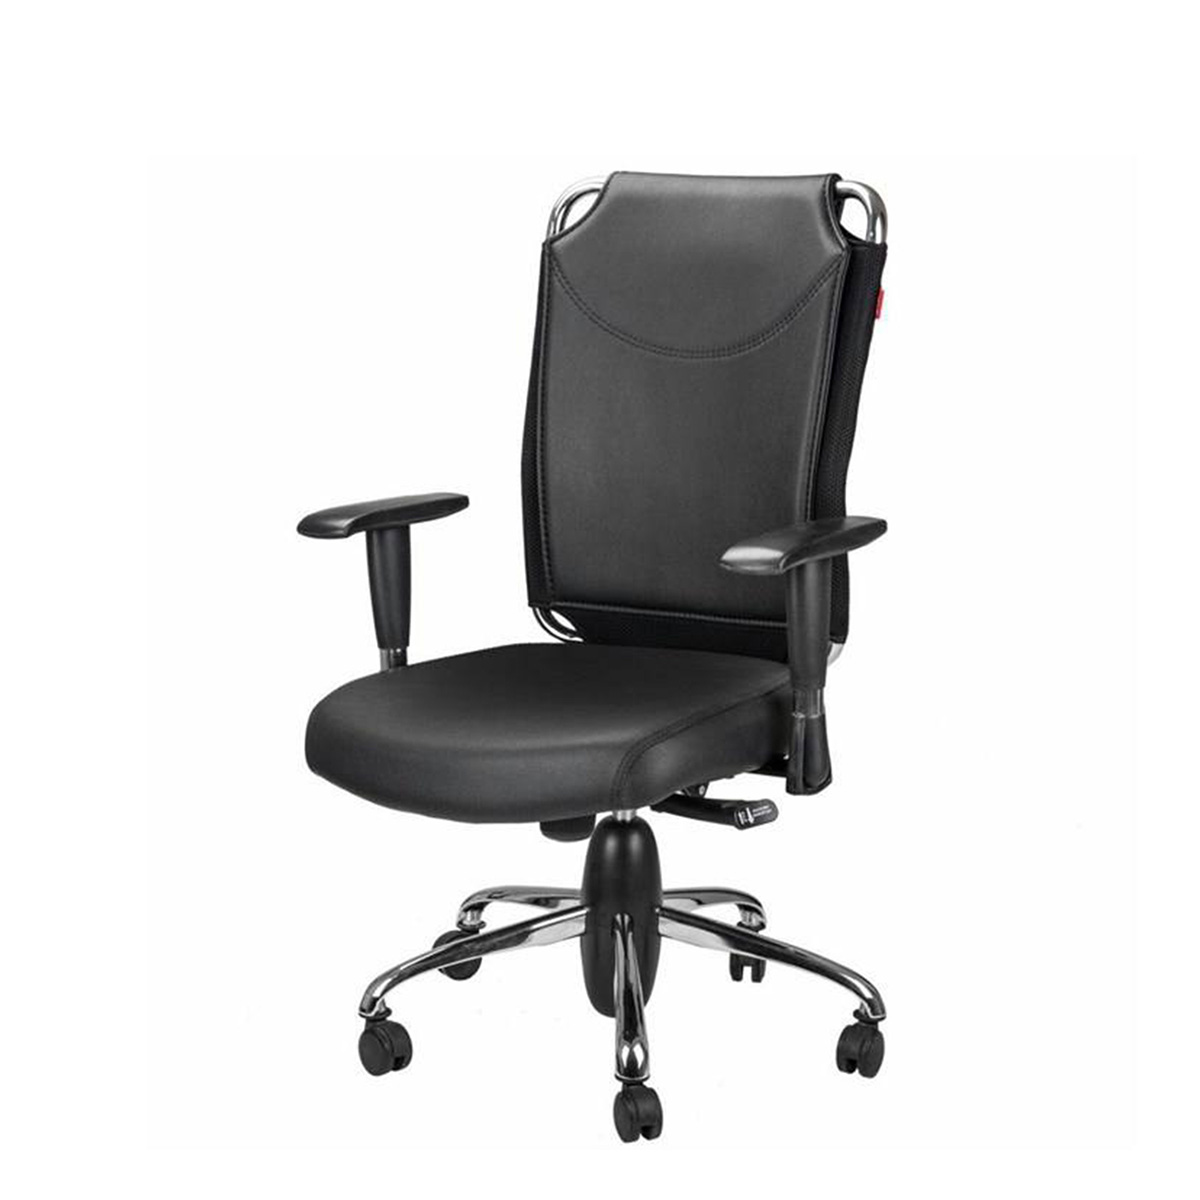 بهترین برند صندلی اداری- صندلی کارشناسی نیلپر مدل OCT712T